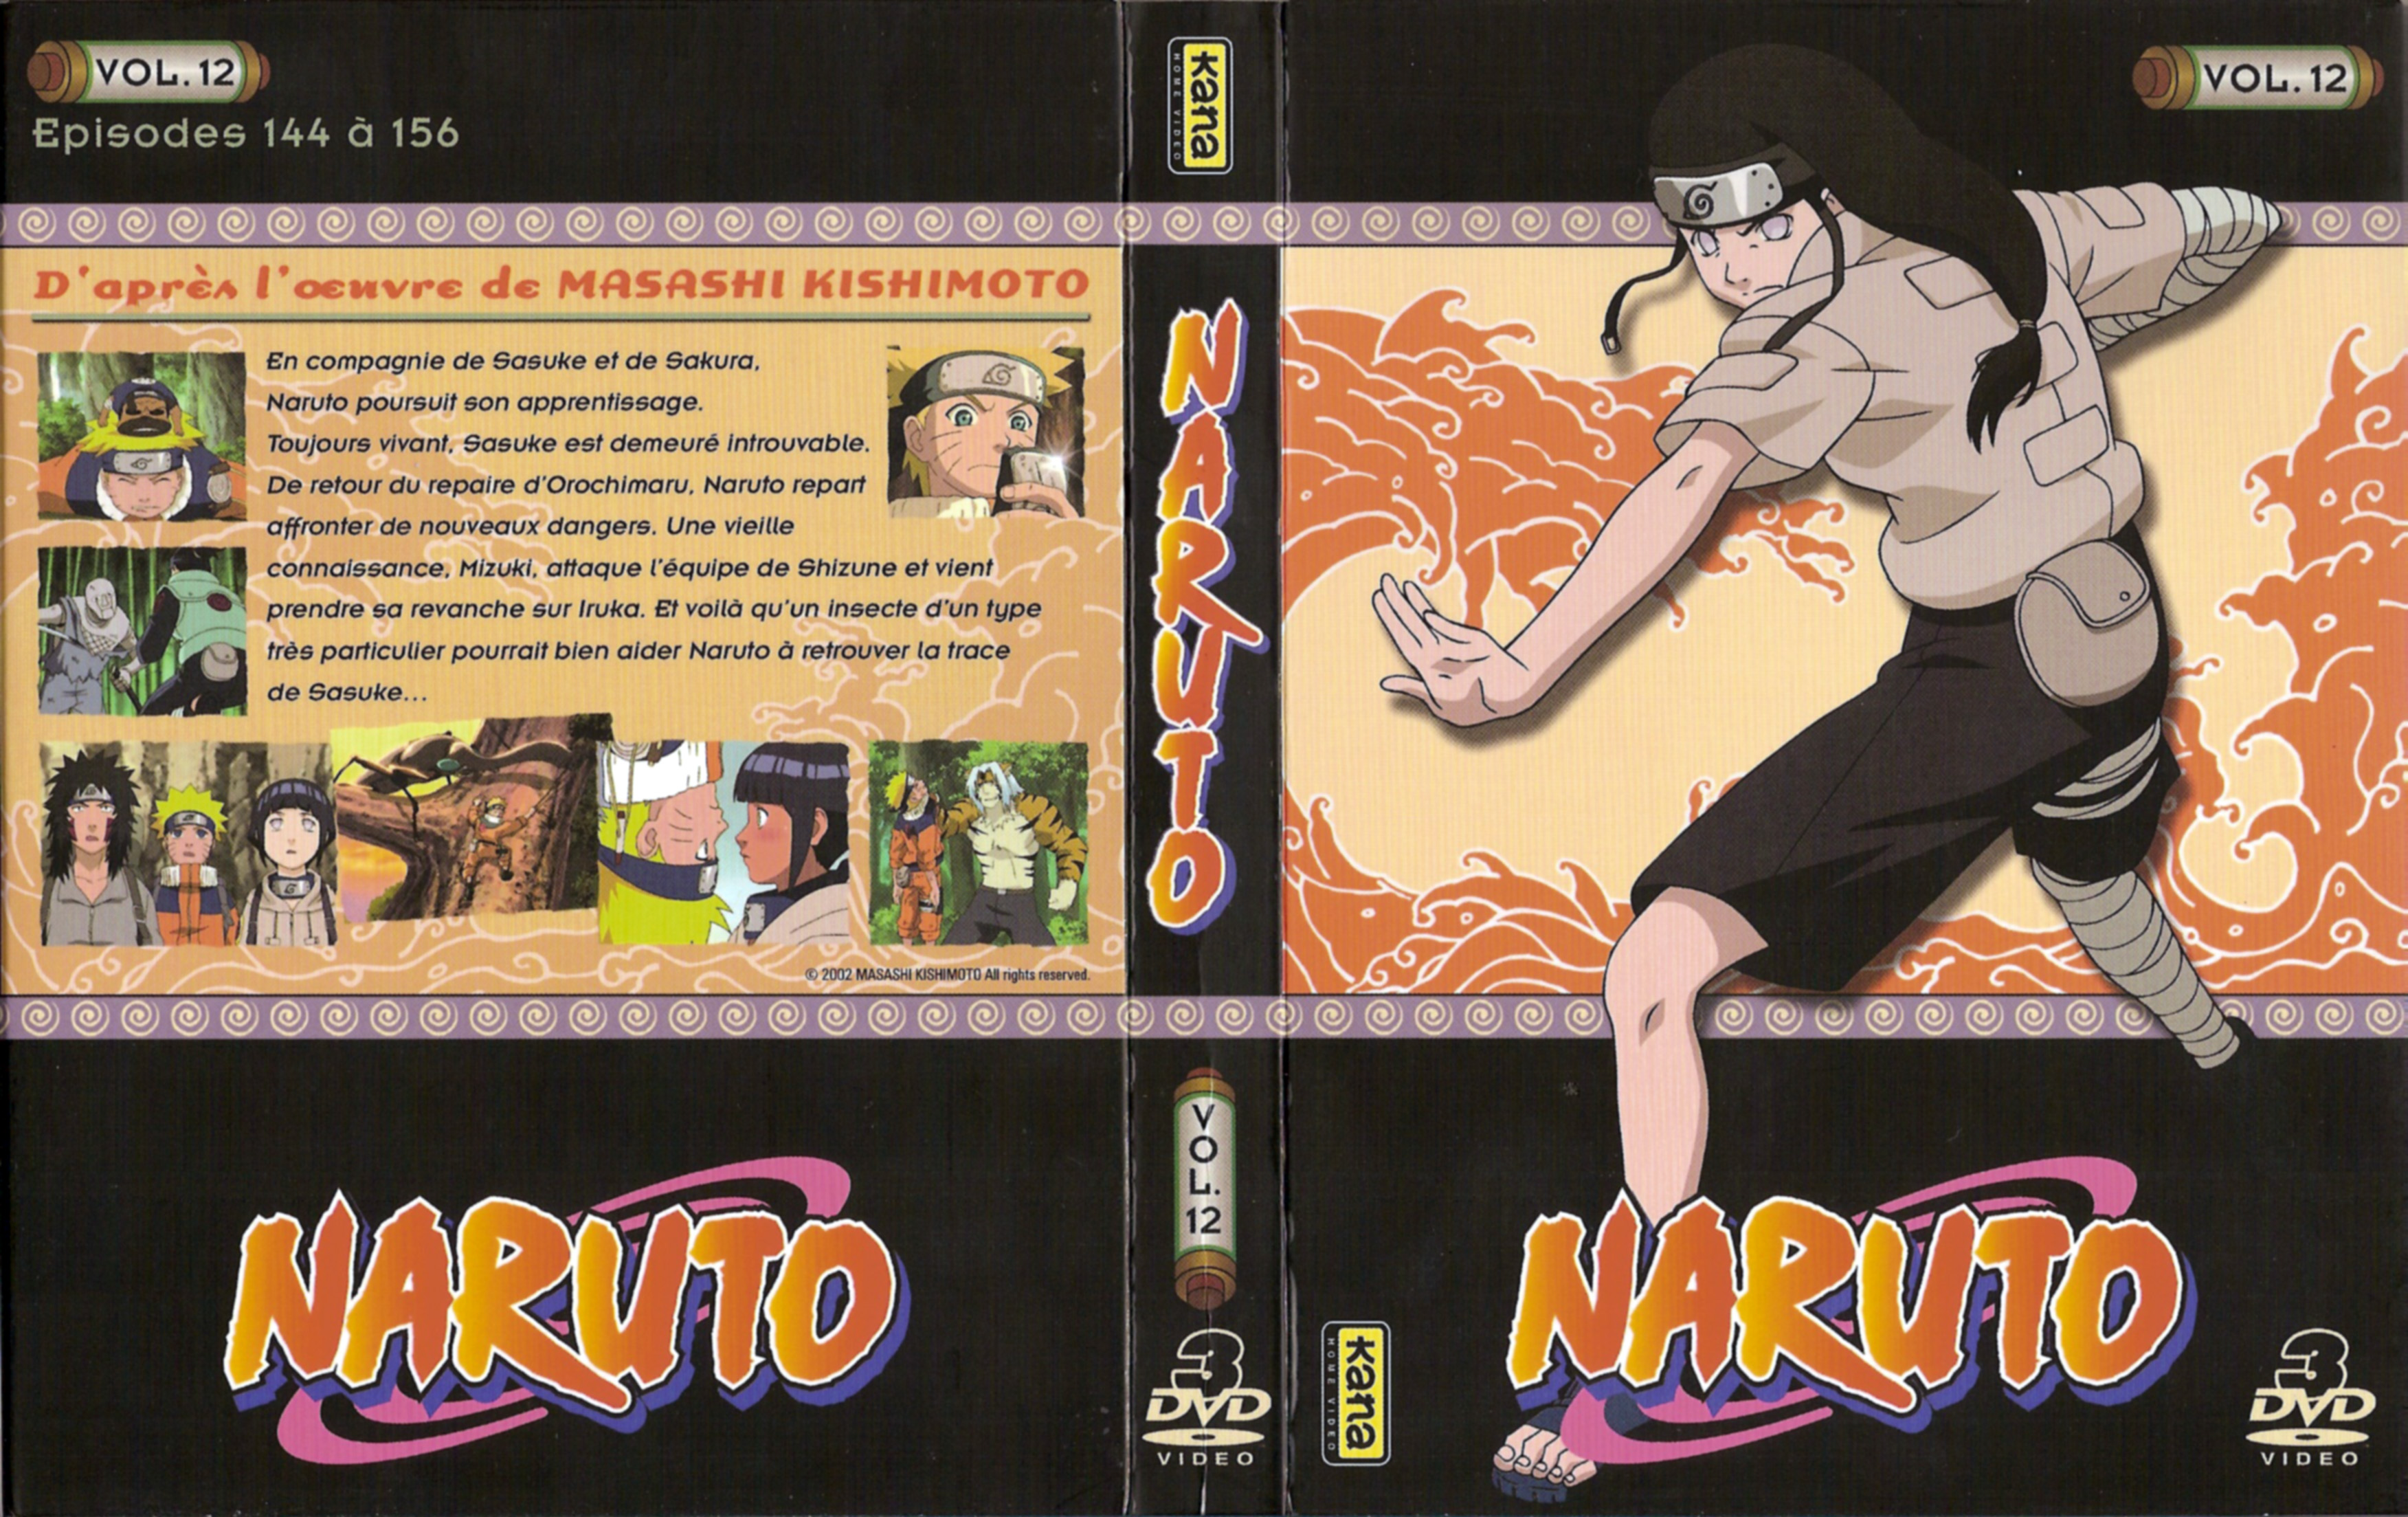 Jaquette DVD Naruto vol 12